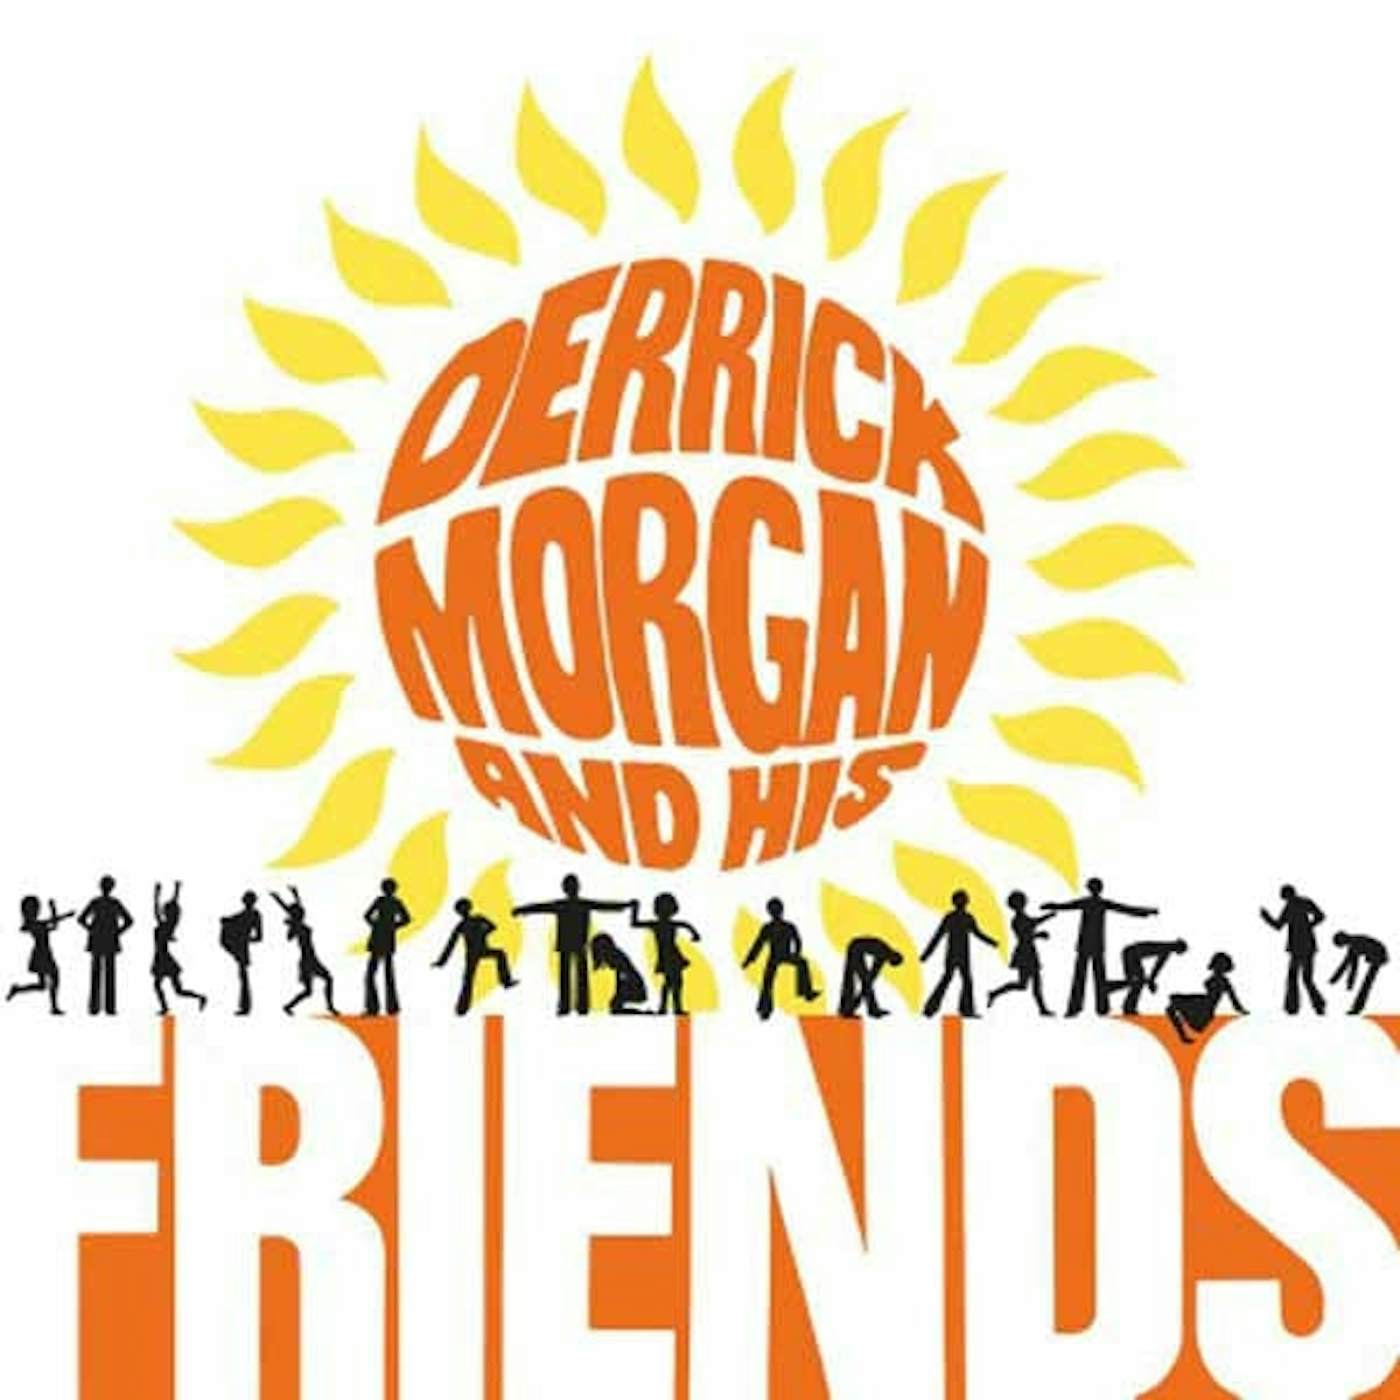 Derrick Morgan LP - Derrick Morgan And His Friends (Coloured) (Vinyl)